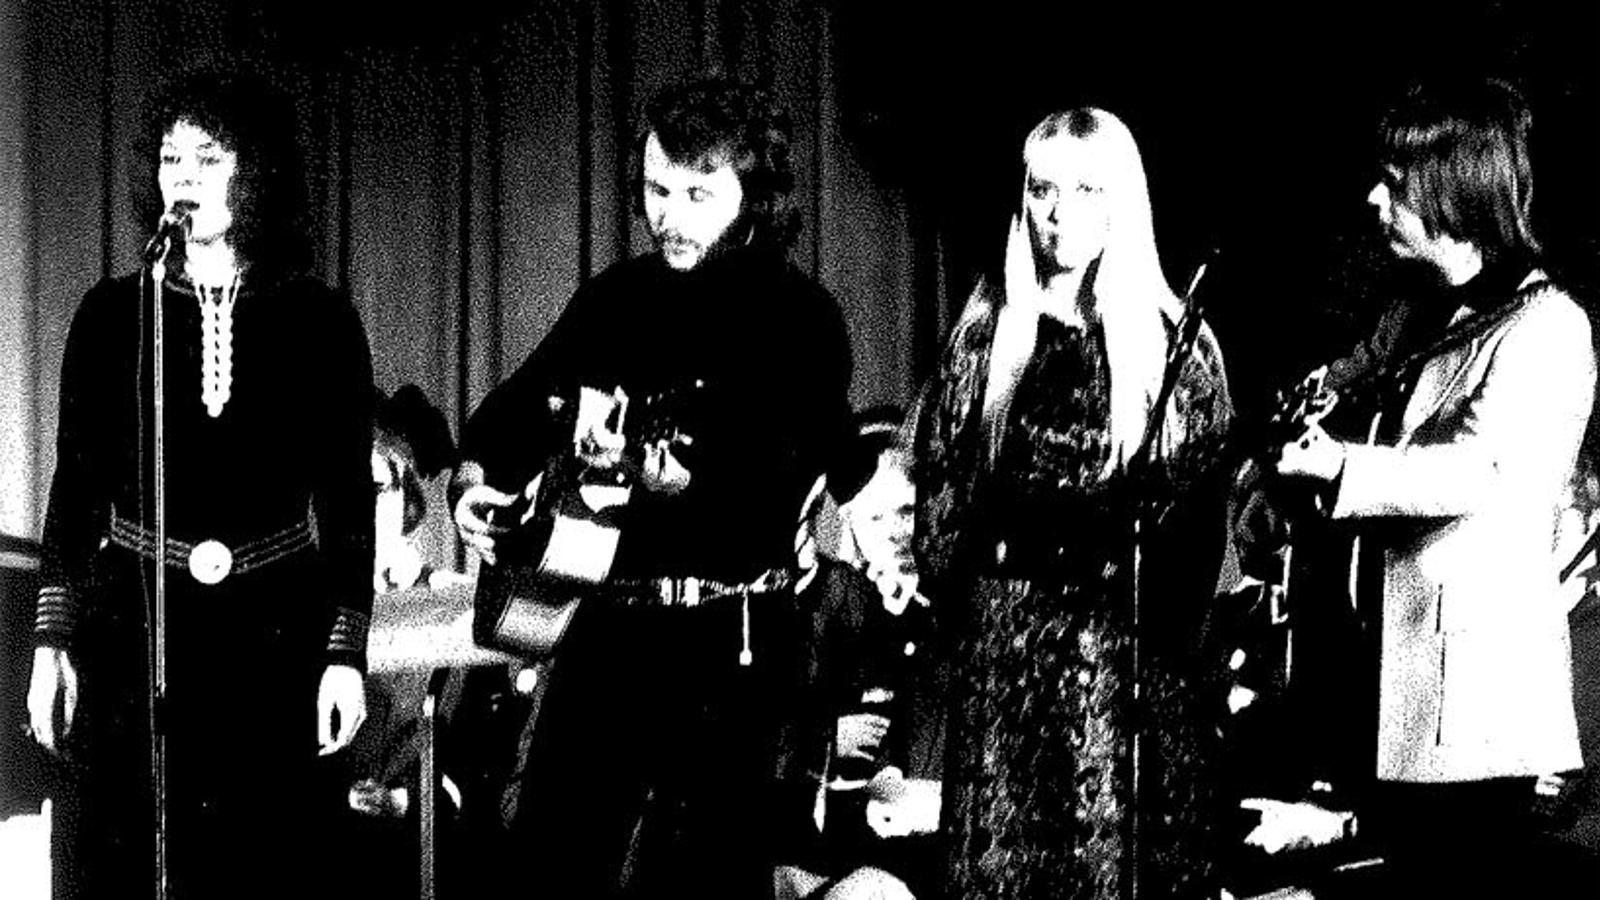 Abba vid Frälsningsarméns riksting i Göteborg 1971. Anni-Frid och Agnetha står vid varsin mikrofon, medan Benny och Björn spelar gitarr.